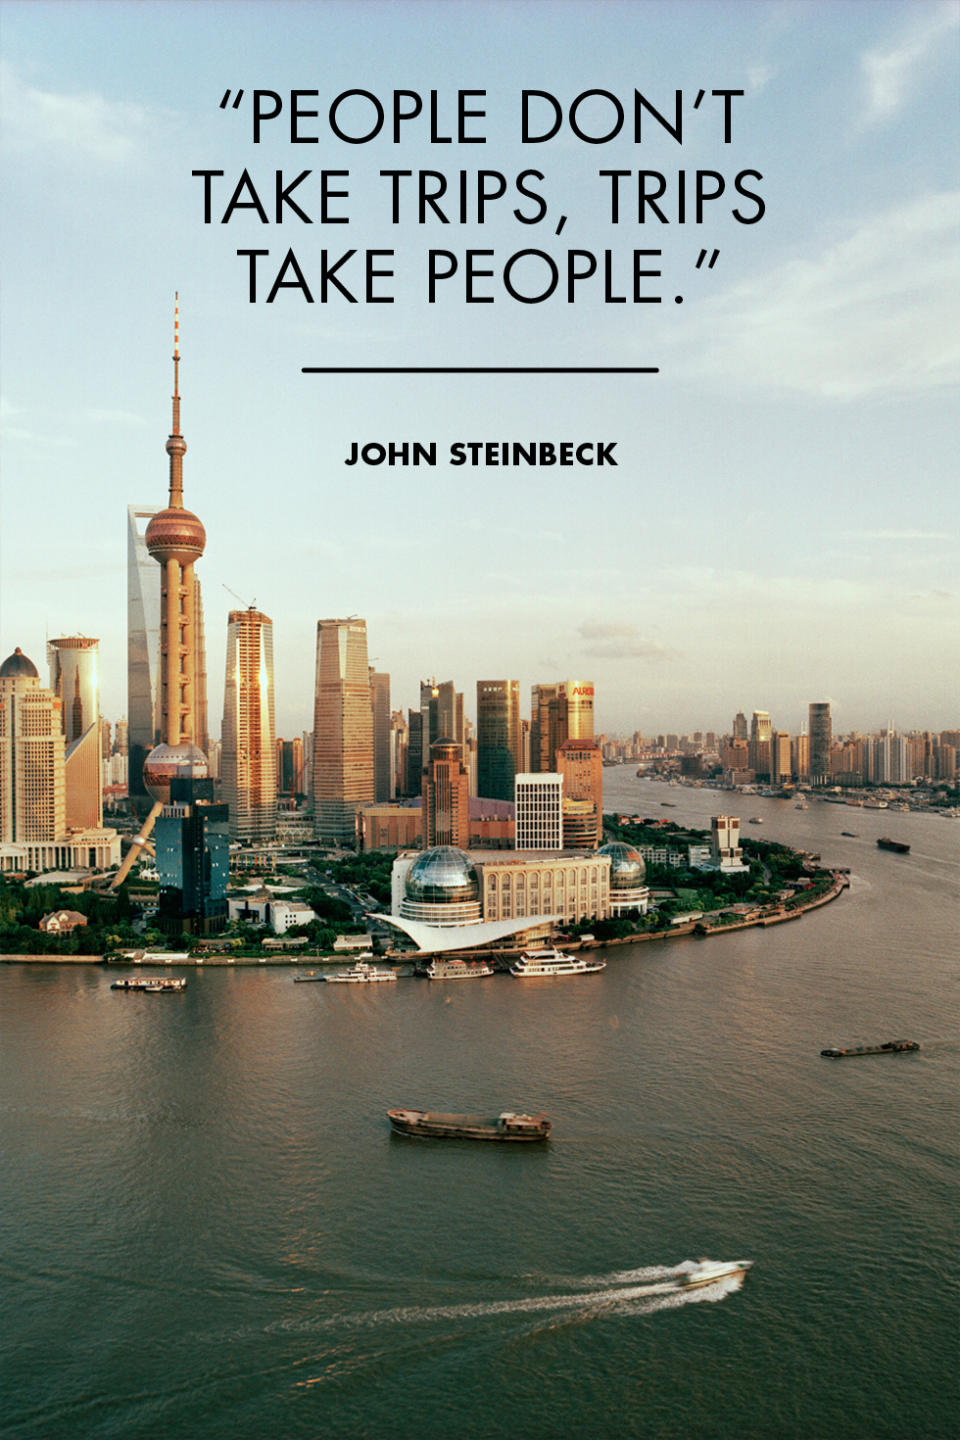 <p>"People don't take trips, trips take people." - John Steinbeck</p><p>Photo: Shanghai, China</p>